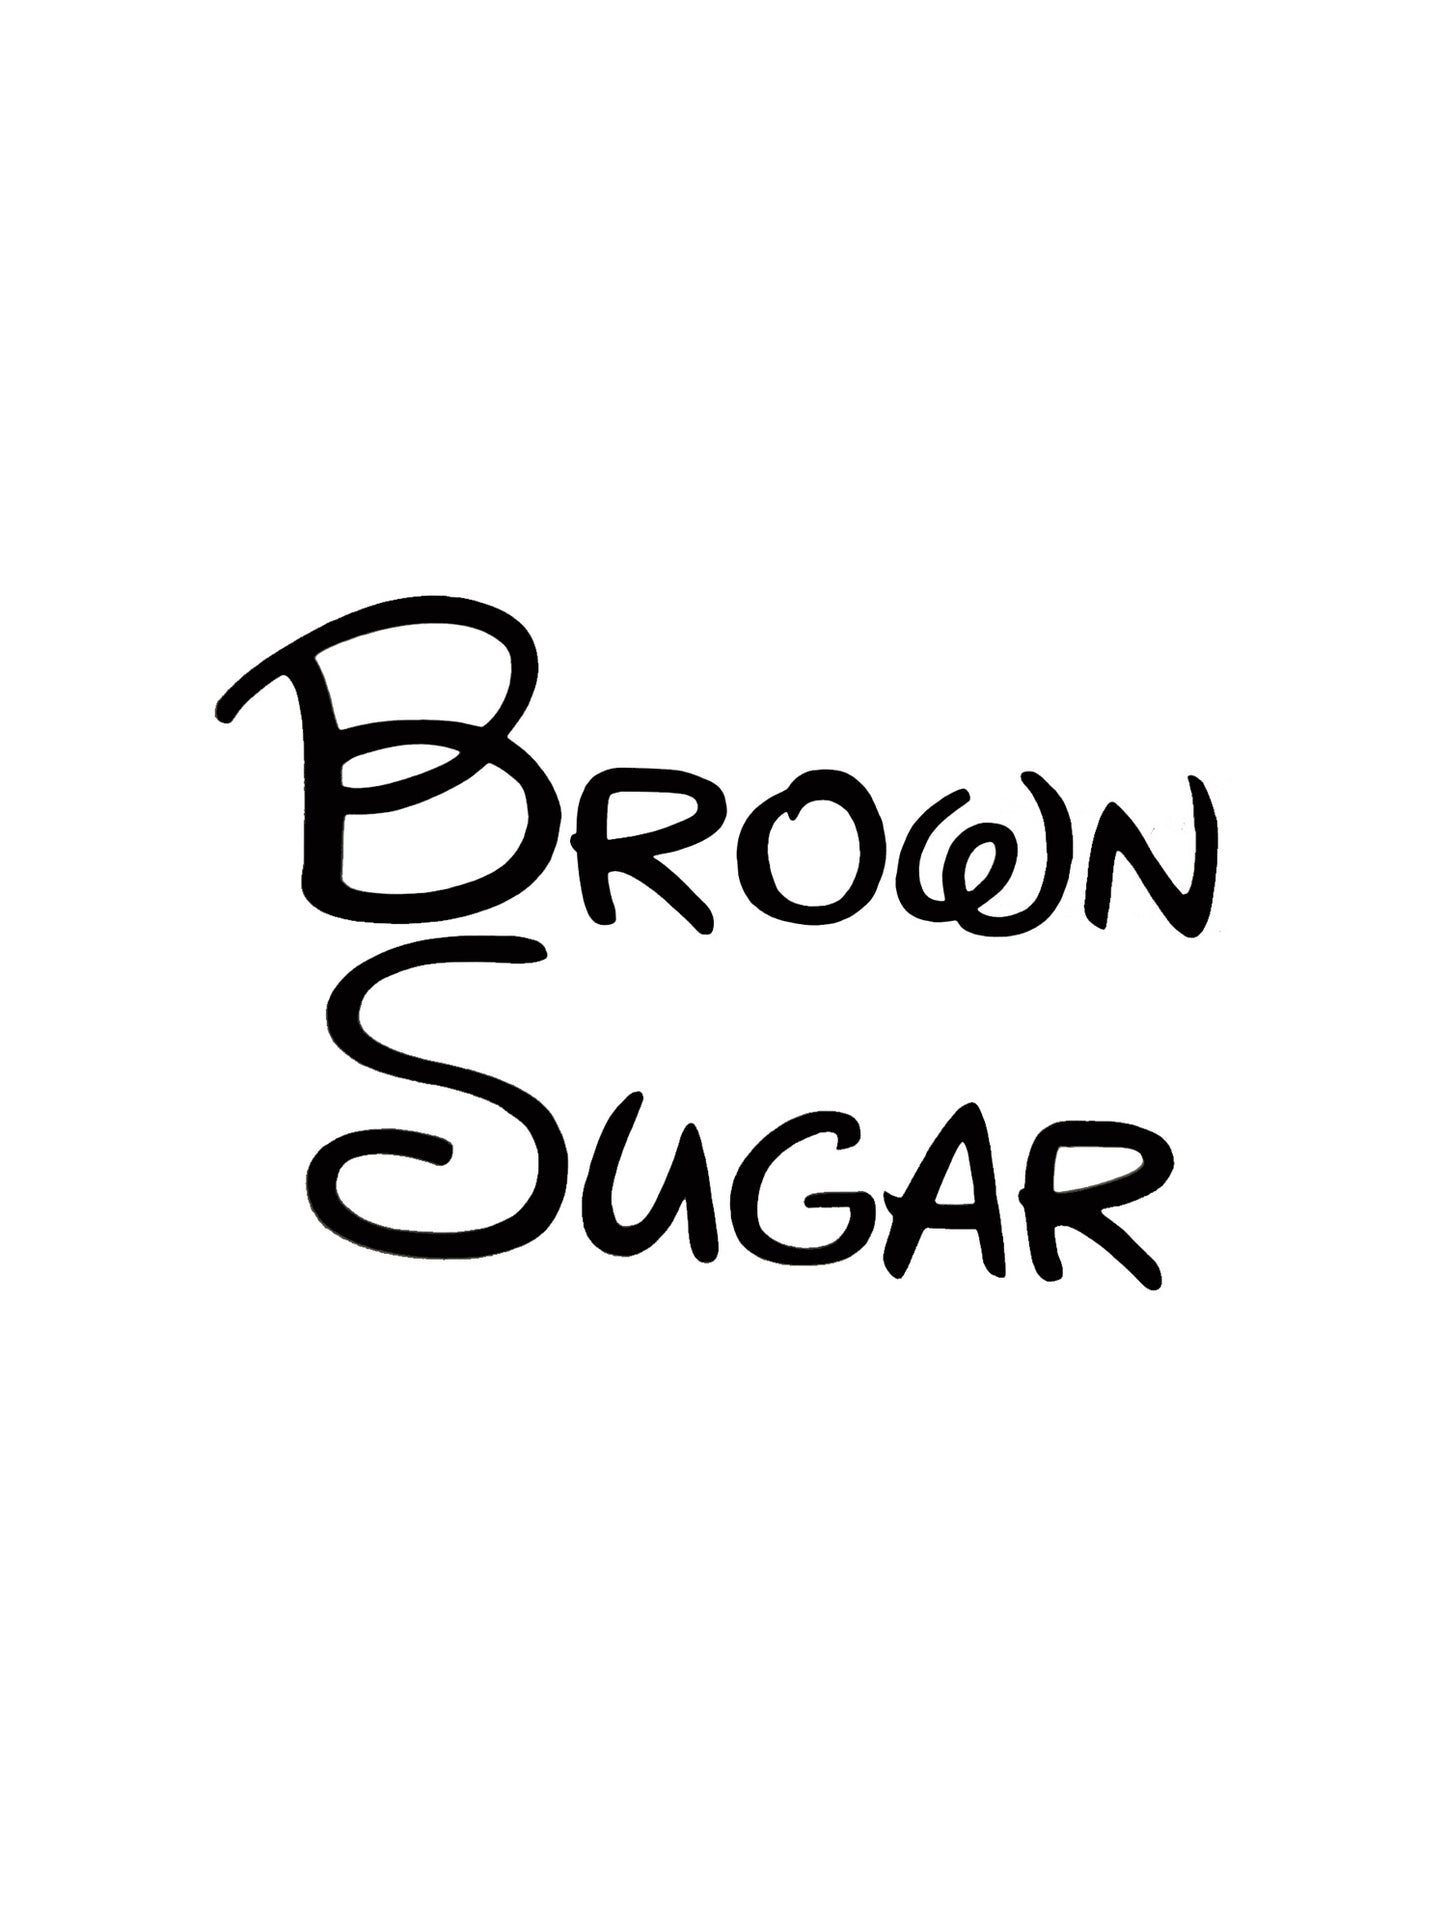 Brown Sugar Kitchen Decal - A Vinyl Sticker Decal